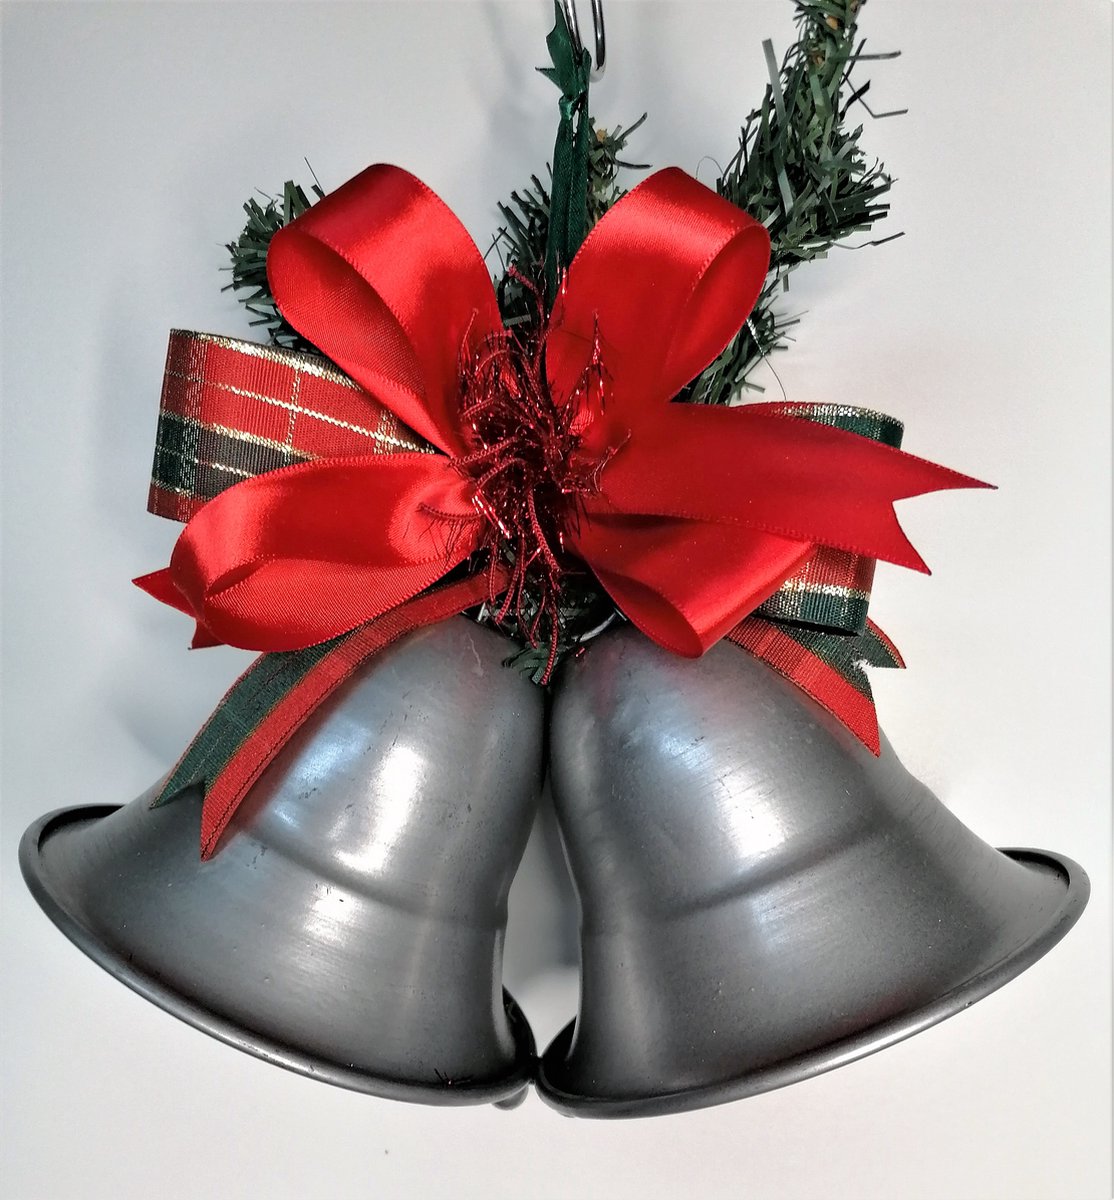 Donia Star Kerstboomversiering, Metaal Kerstbal handmade in Belgium - zilverkleurig